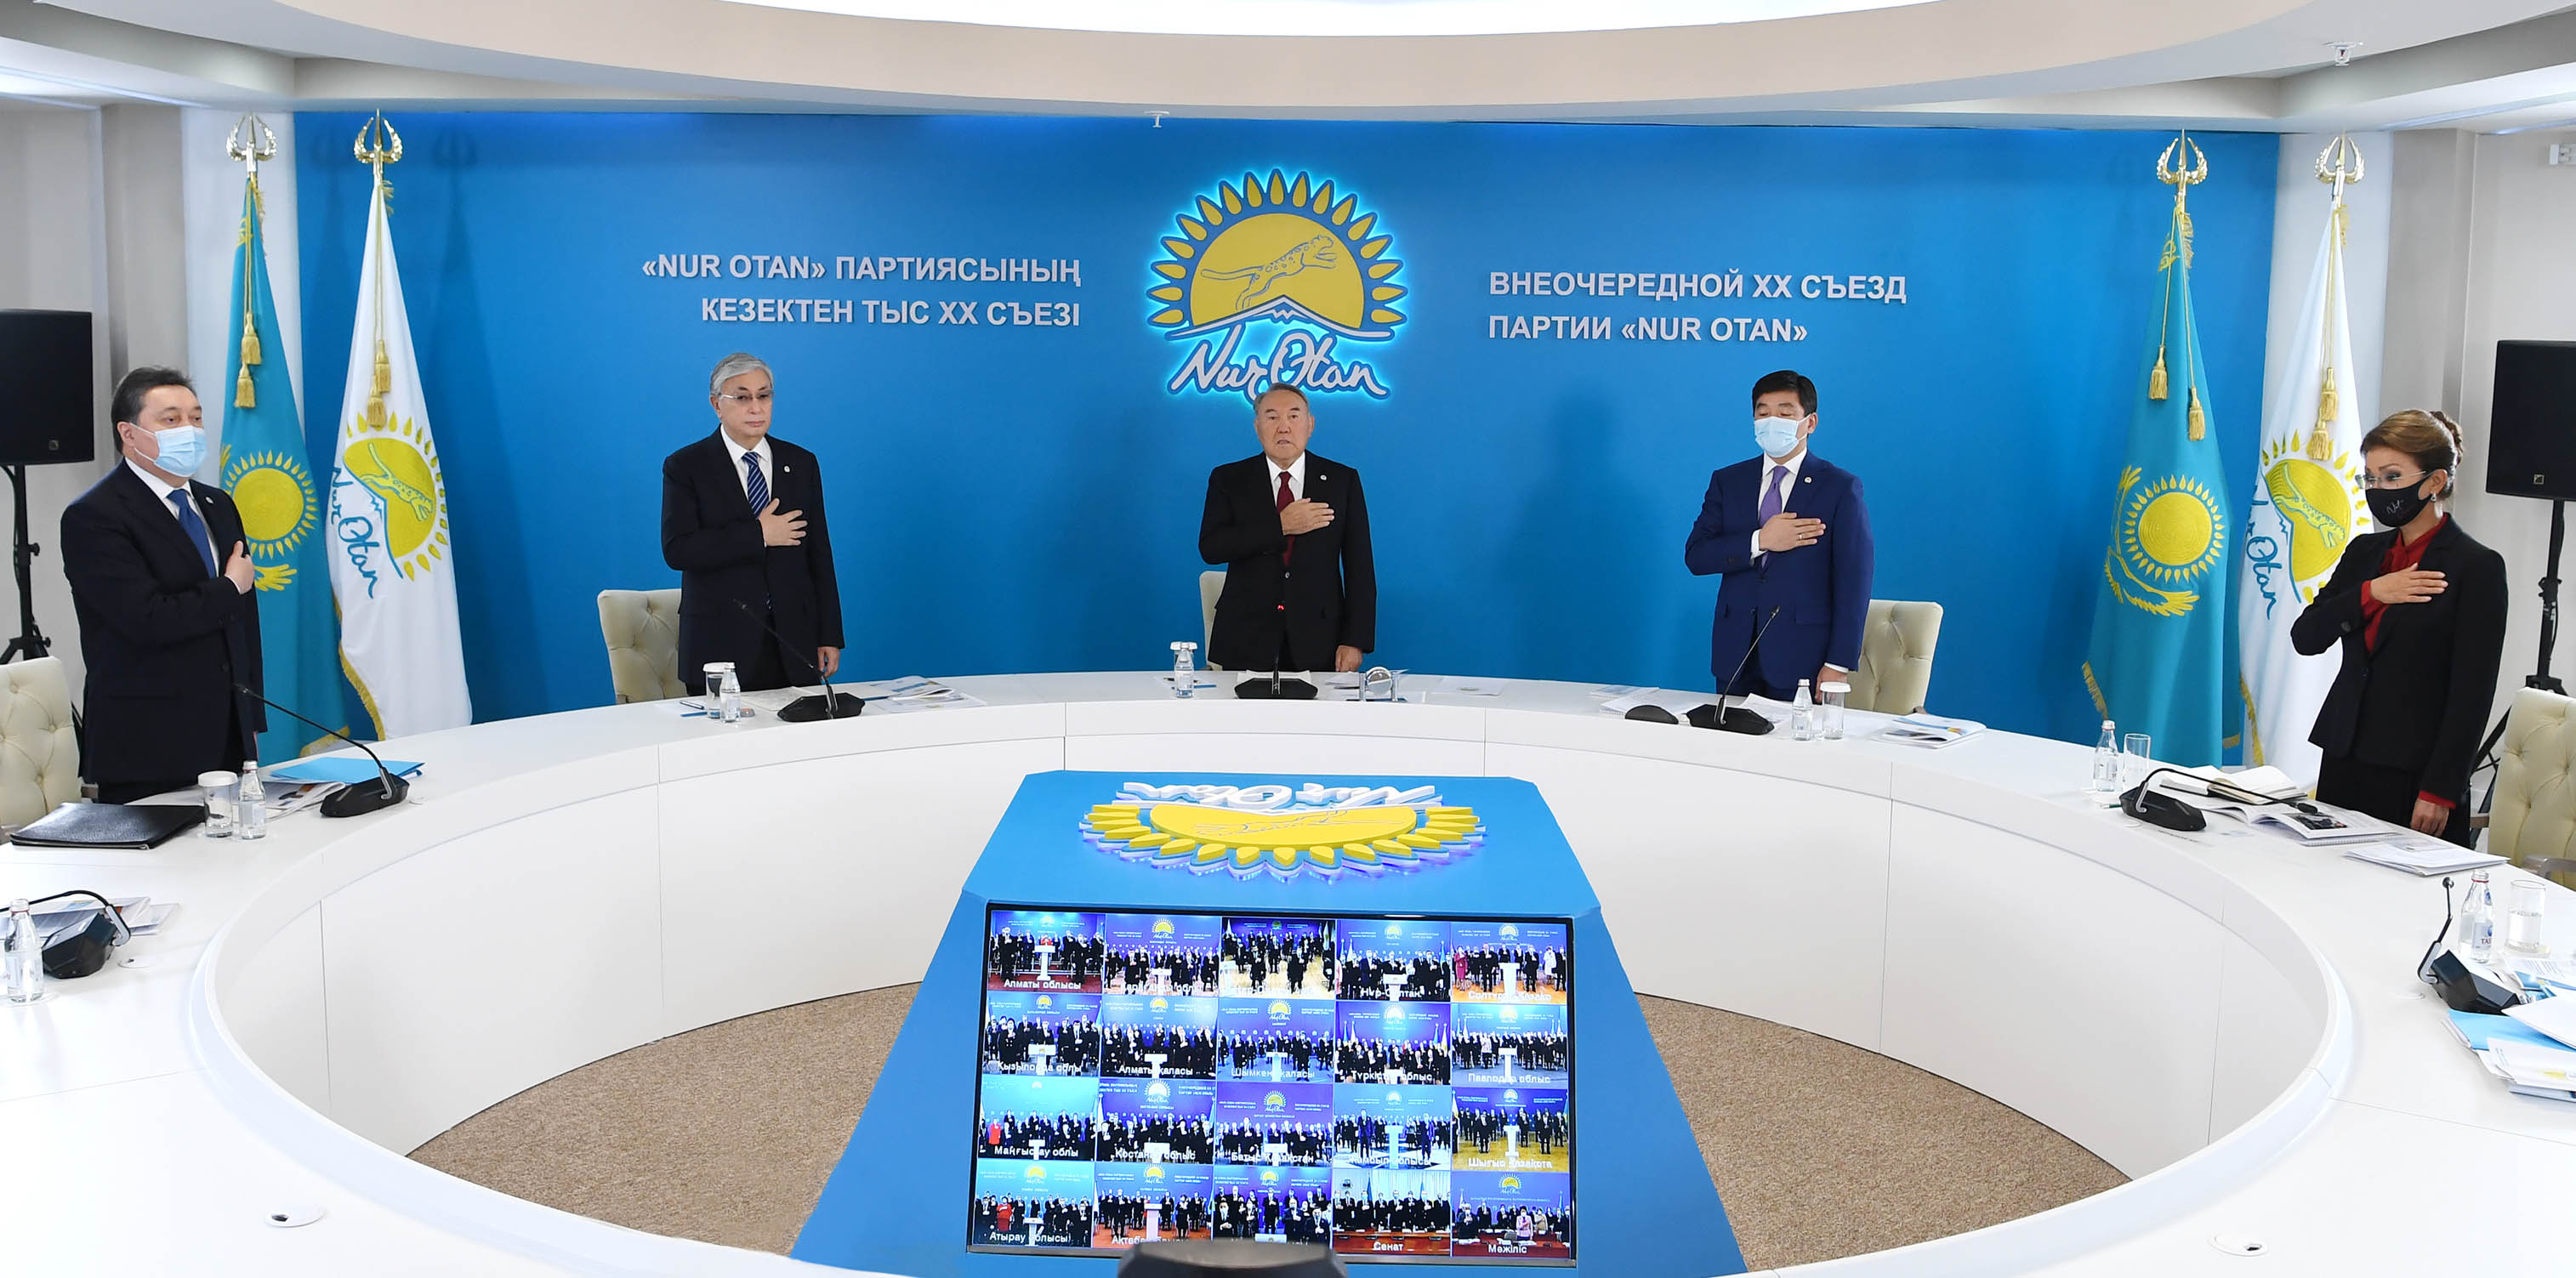 Нұрсұлтан Назарбаевтың төрағалығымен "Nur Otan" партиясының кезектен тыс ХХ съезі өтті